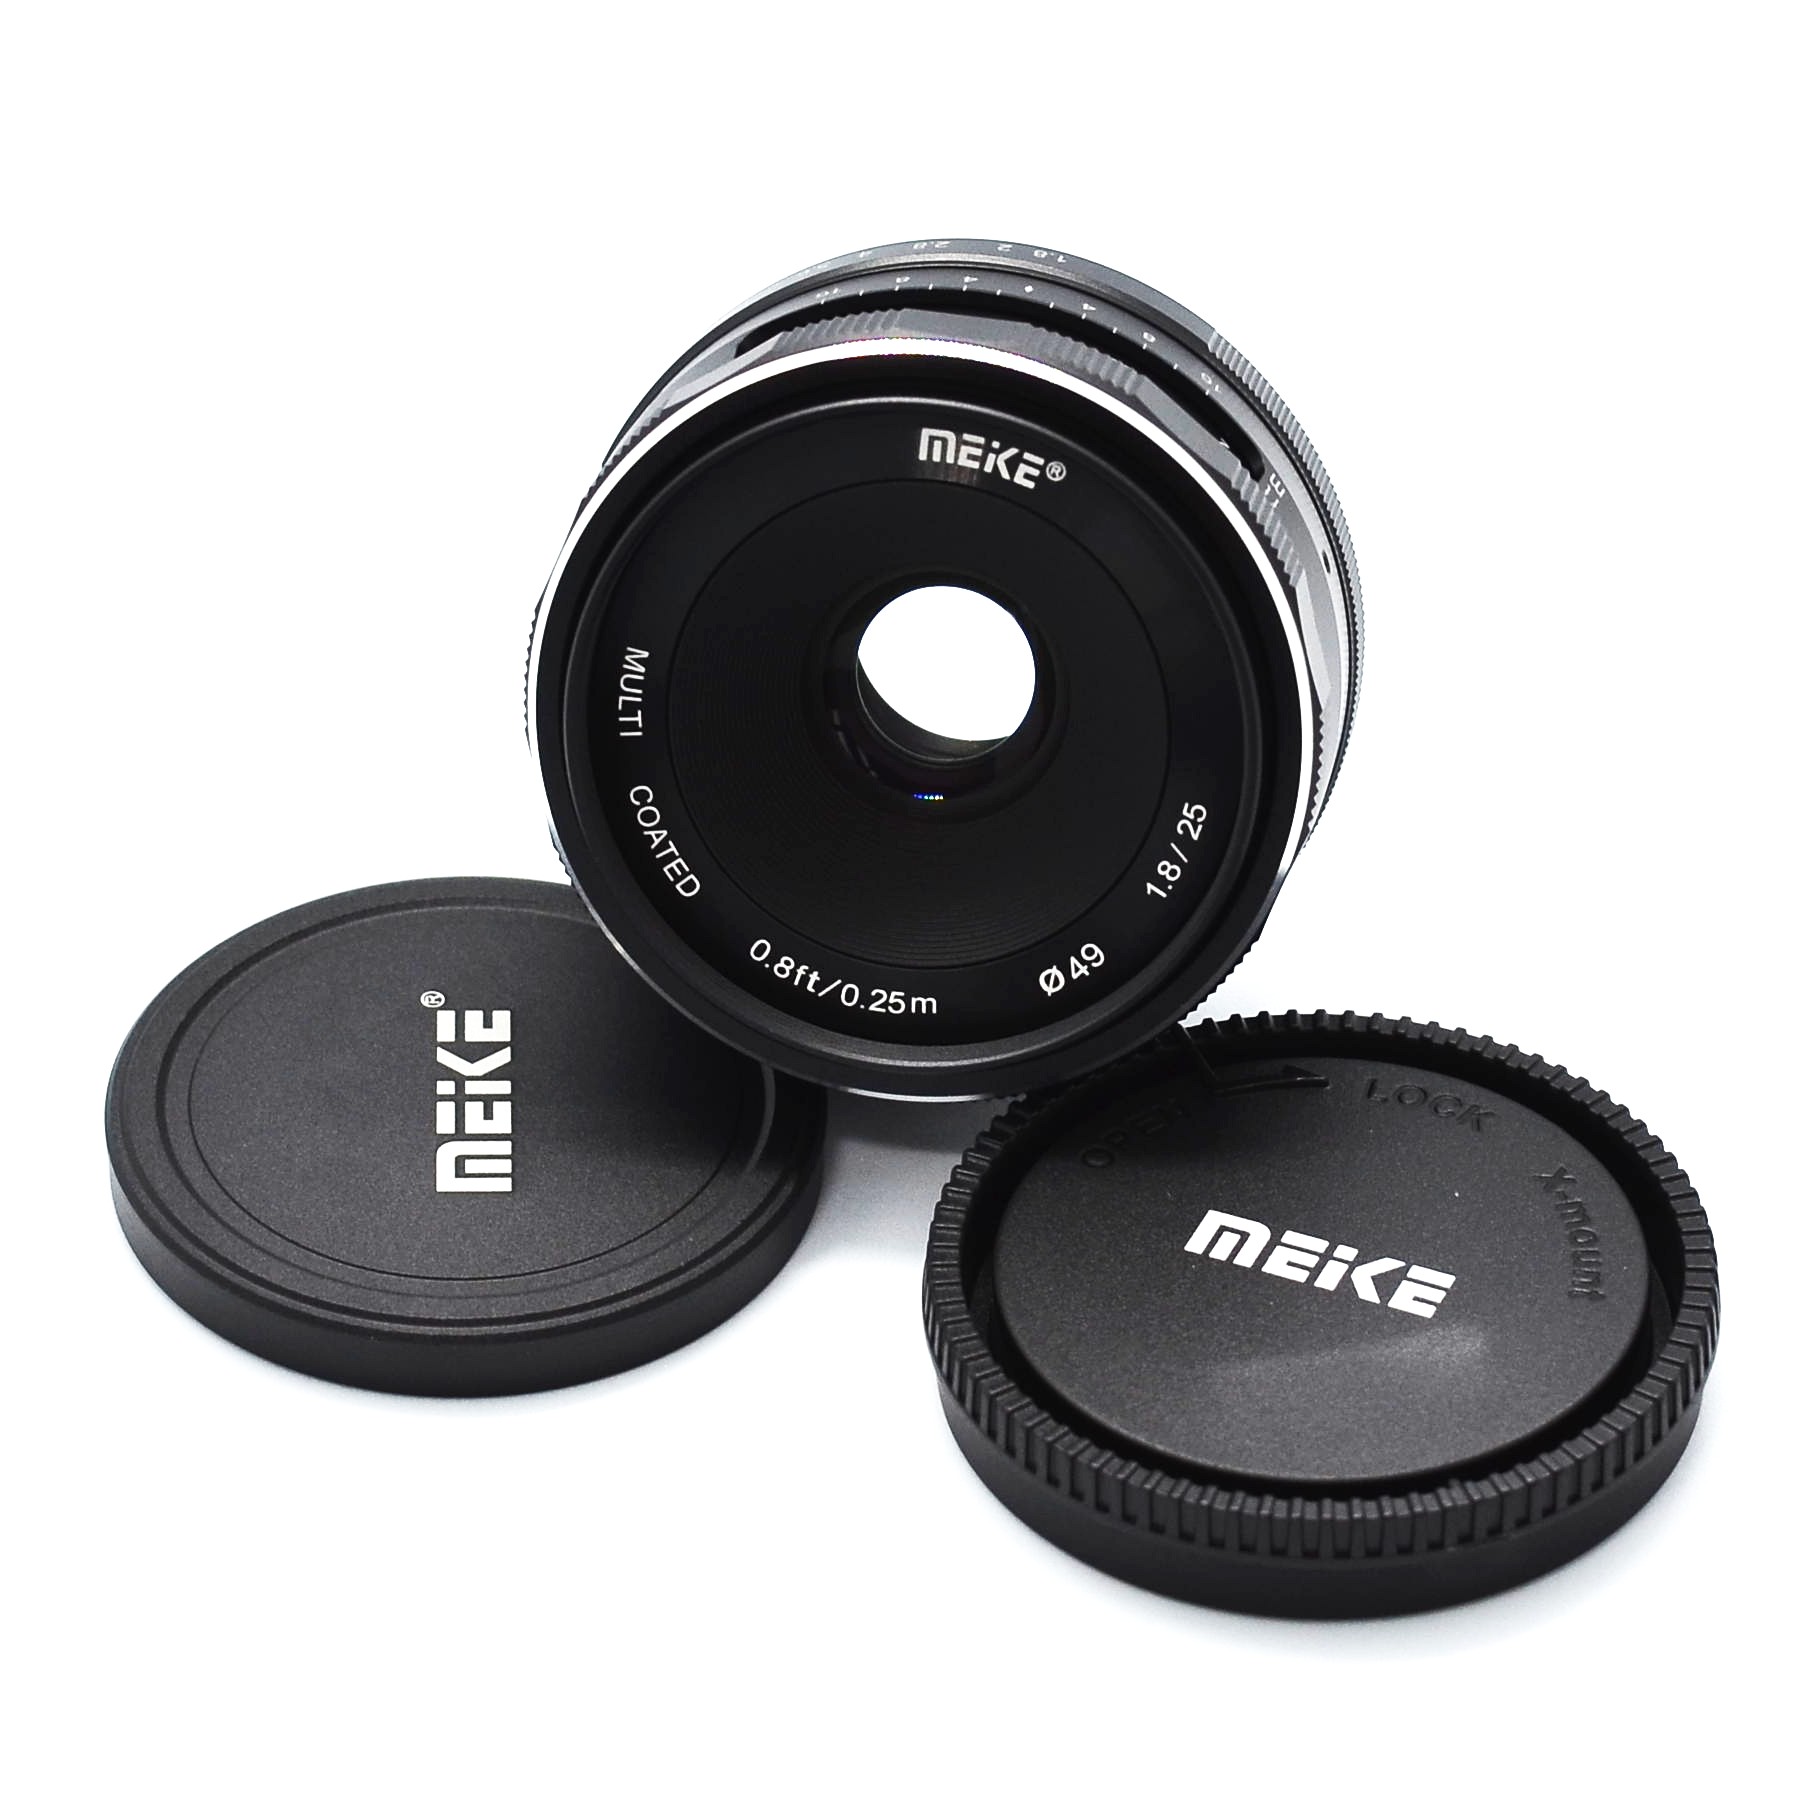 Ống kính Meike 25mm F1.8 cho máy ảnh mirroless Sony, Fuji, Canon lấy nét thủ công- Hàng nhập khẩu